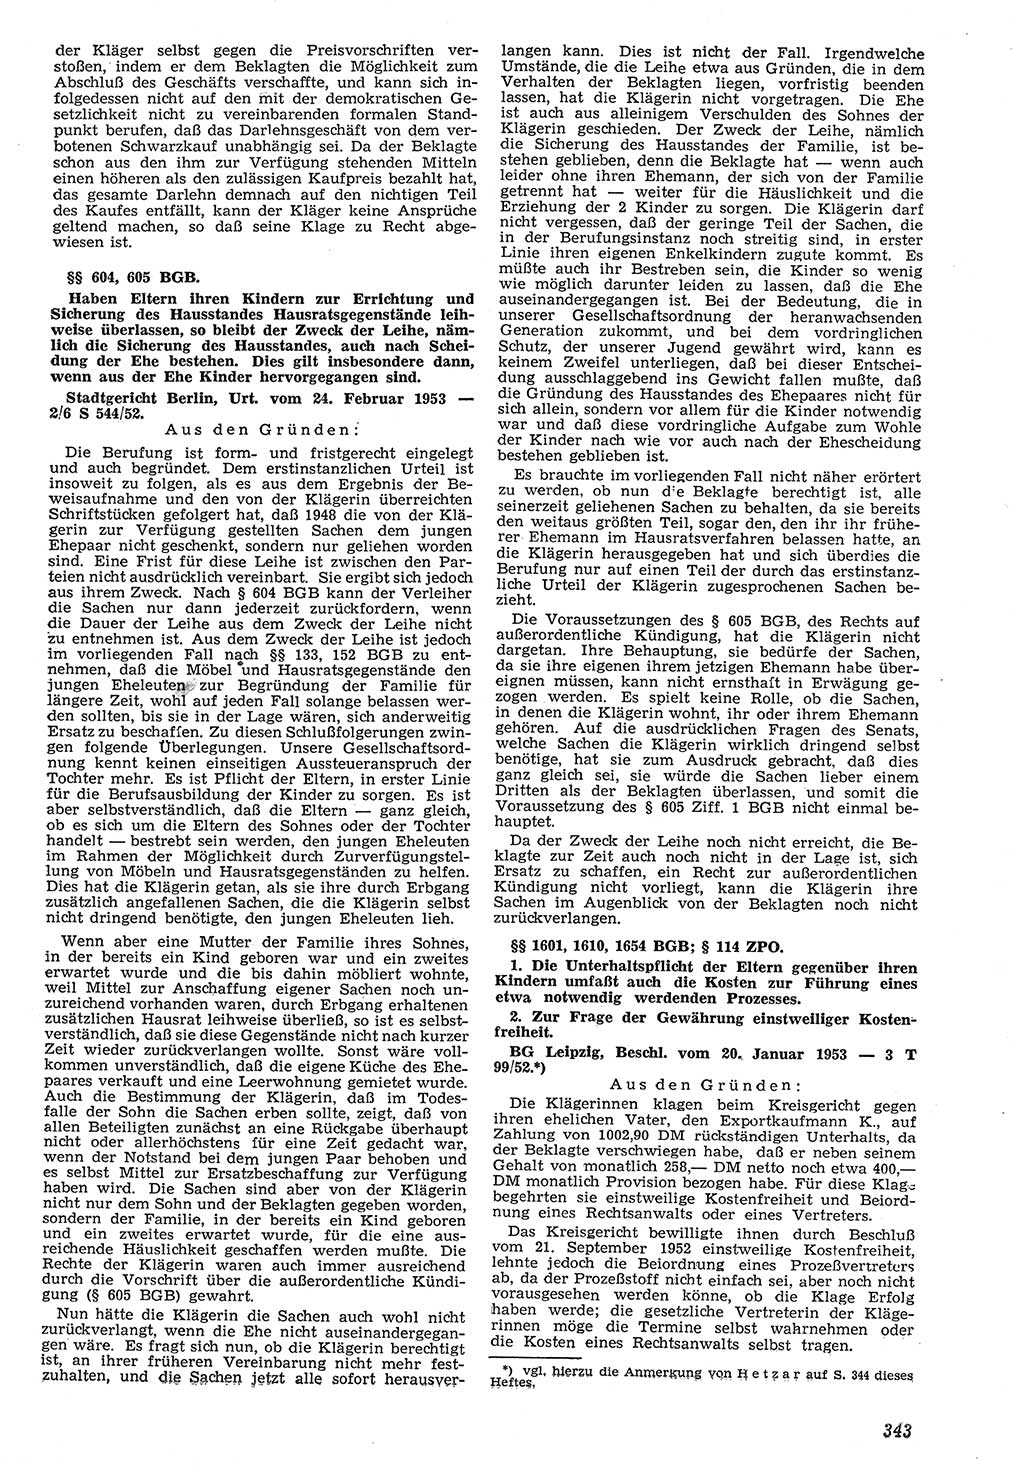 Neue Justiz (NJ), Zeitschrift für Recht und Rechtswissenschaft [Deutsche Demokratische Republik (DDR)], 7. Jahrgang 1953, Seite 343 (NJ DDR 1953, S. 343)